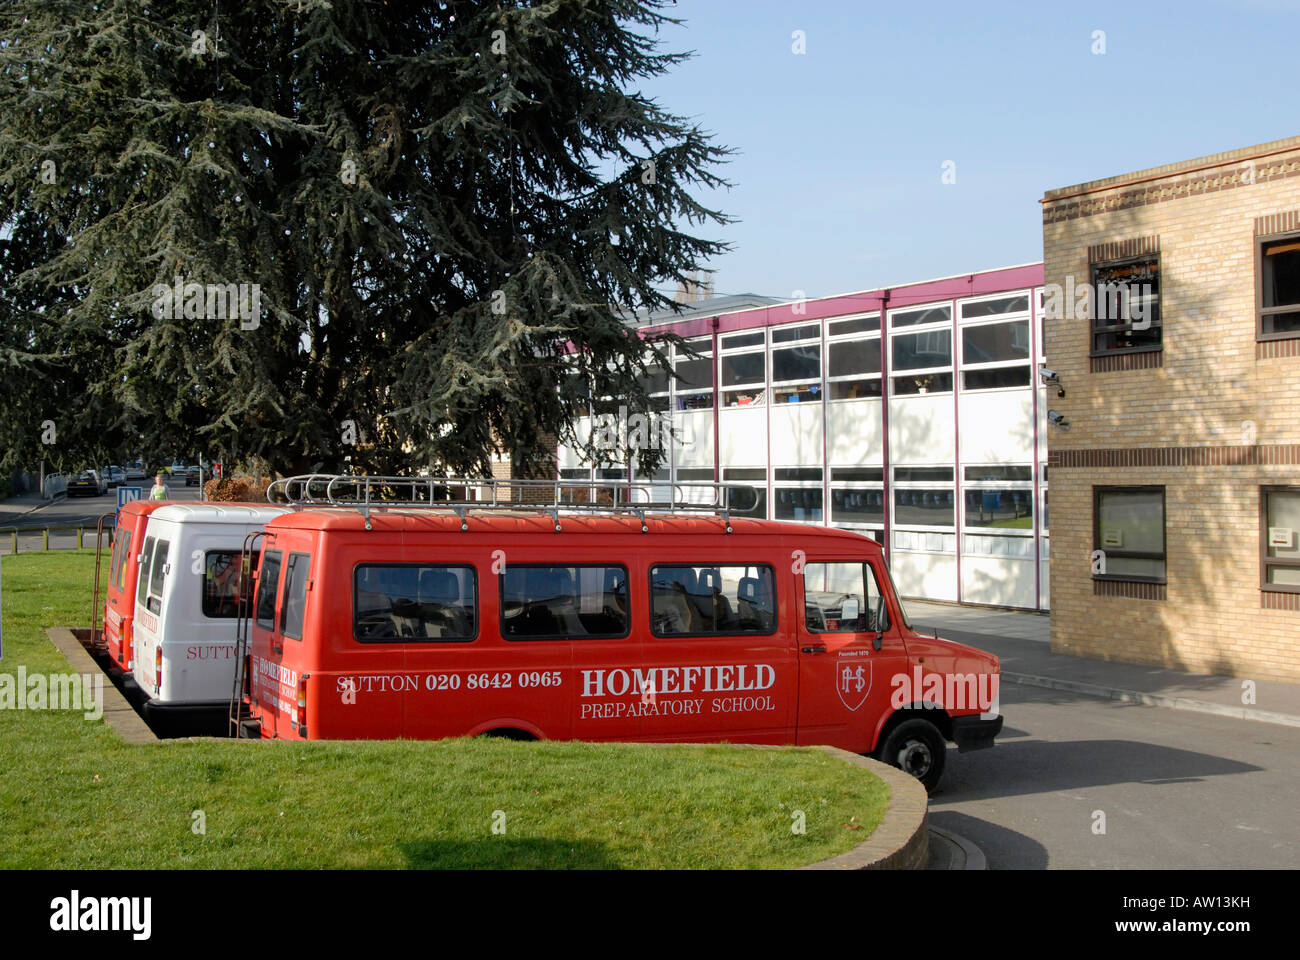 L'école préparatoire de l'école et de minibus, Sutton, Surrey, Angleterre, Grande-Bretagne, Royaume-Uni, Europe Banque D'Images